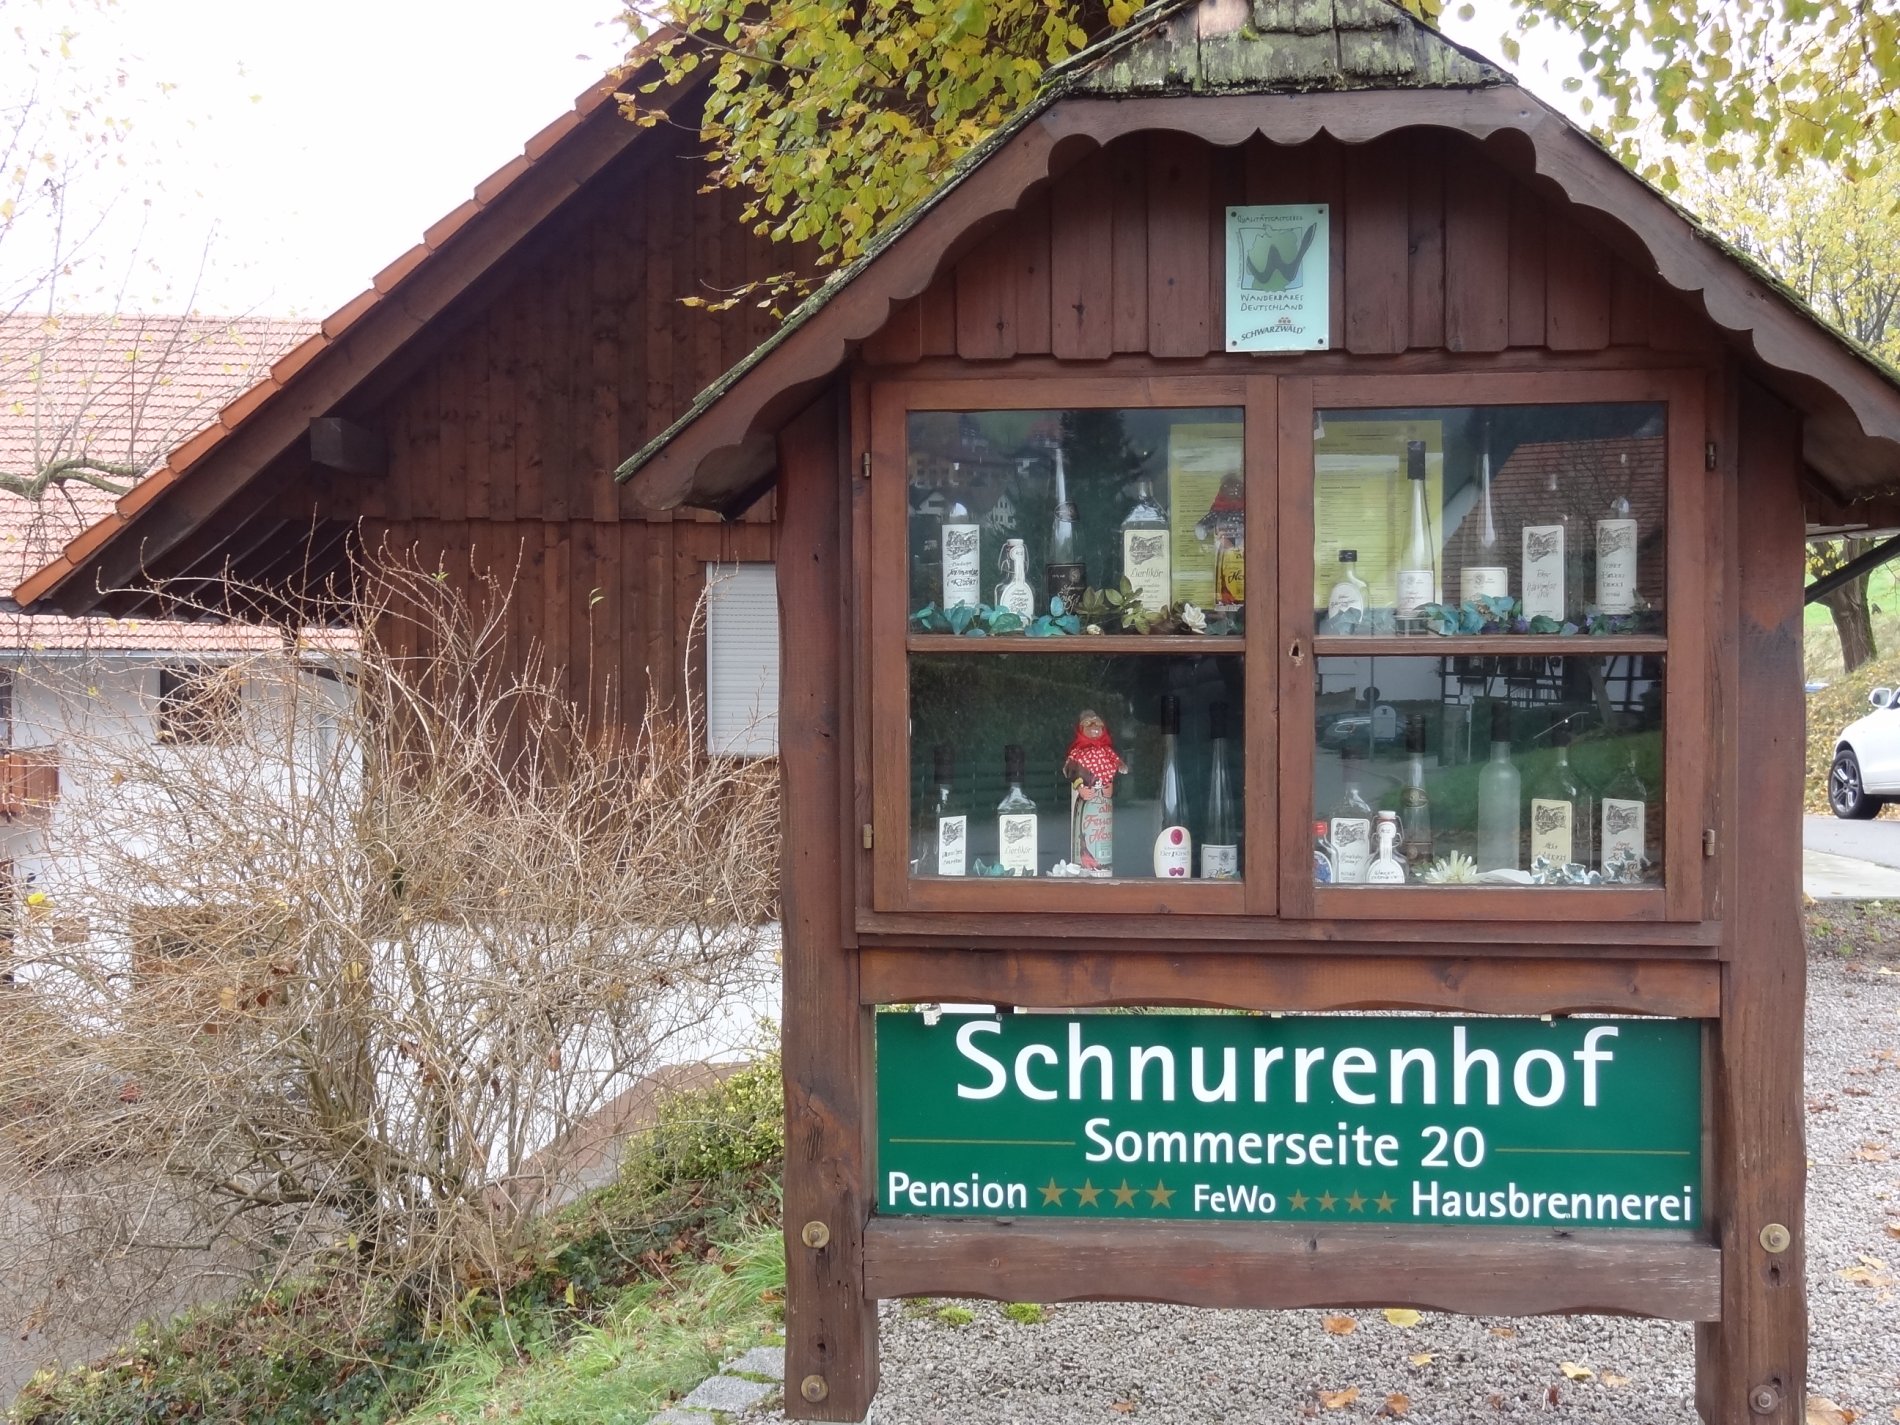 Schnurrenhof in Seebach